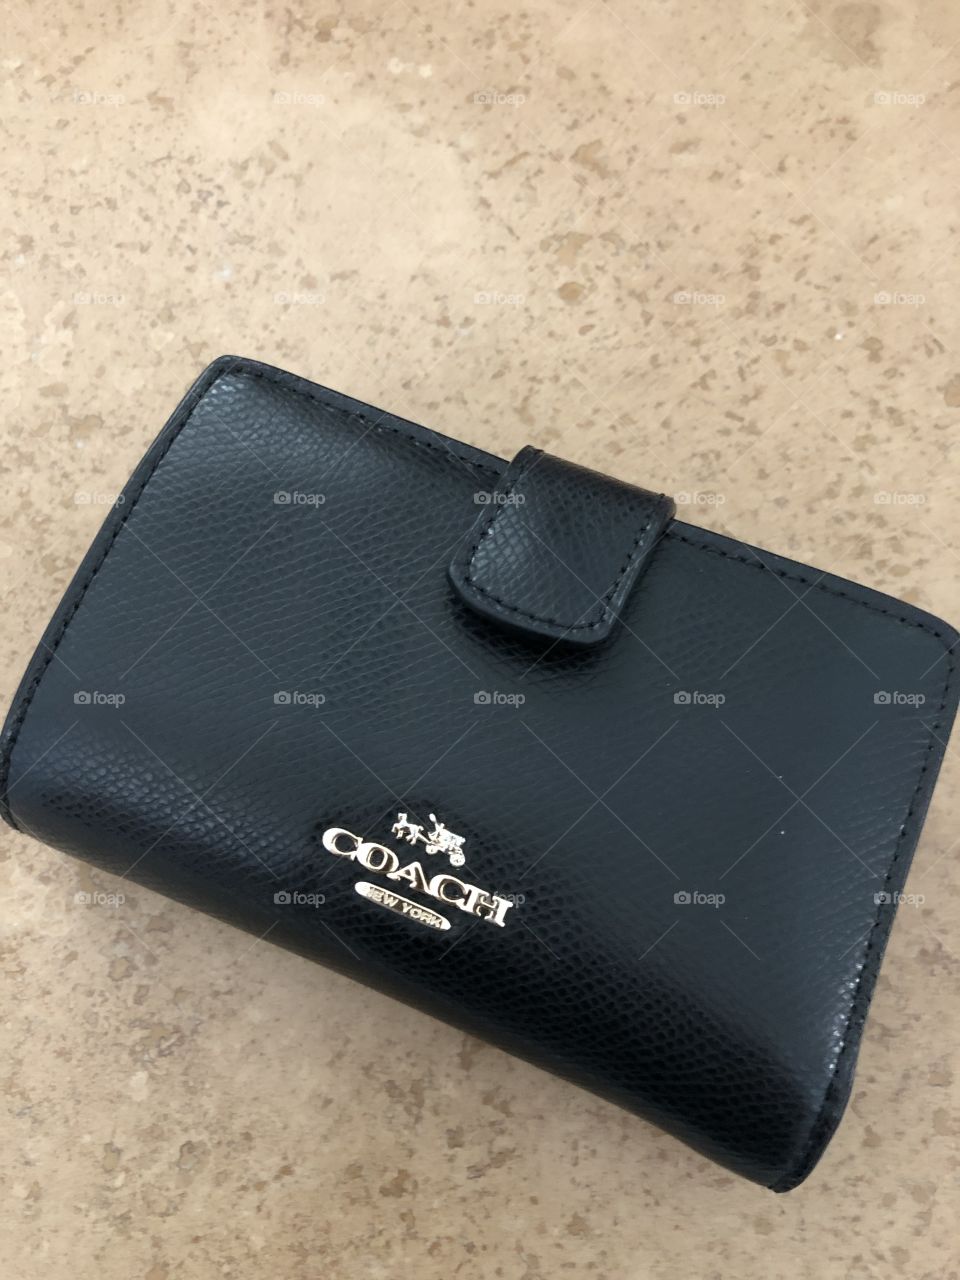 Black coach wallet